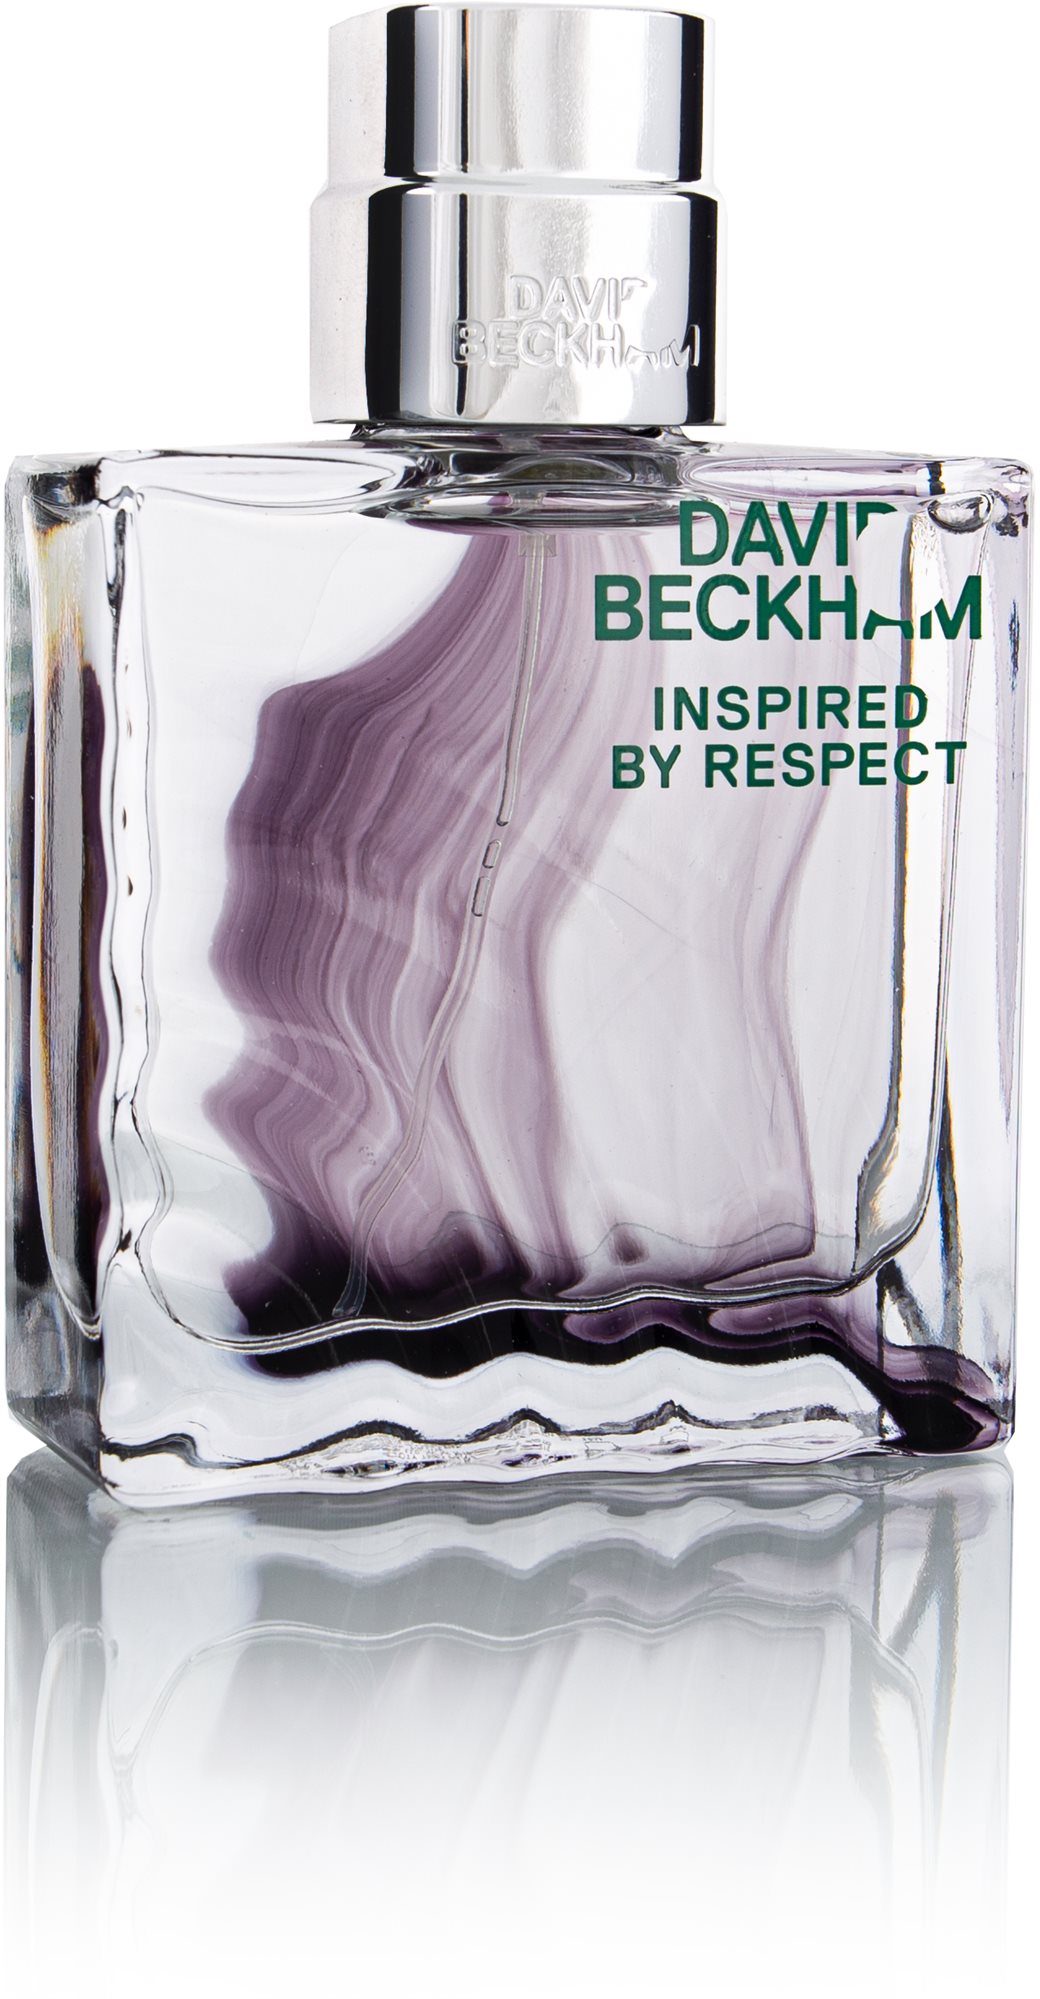 DAVID BECKHAM Inspired by Respect EdT 60 ml